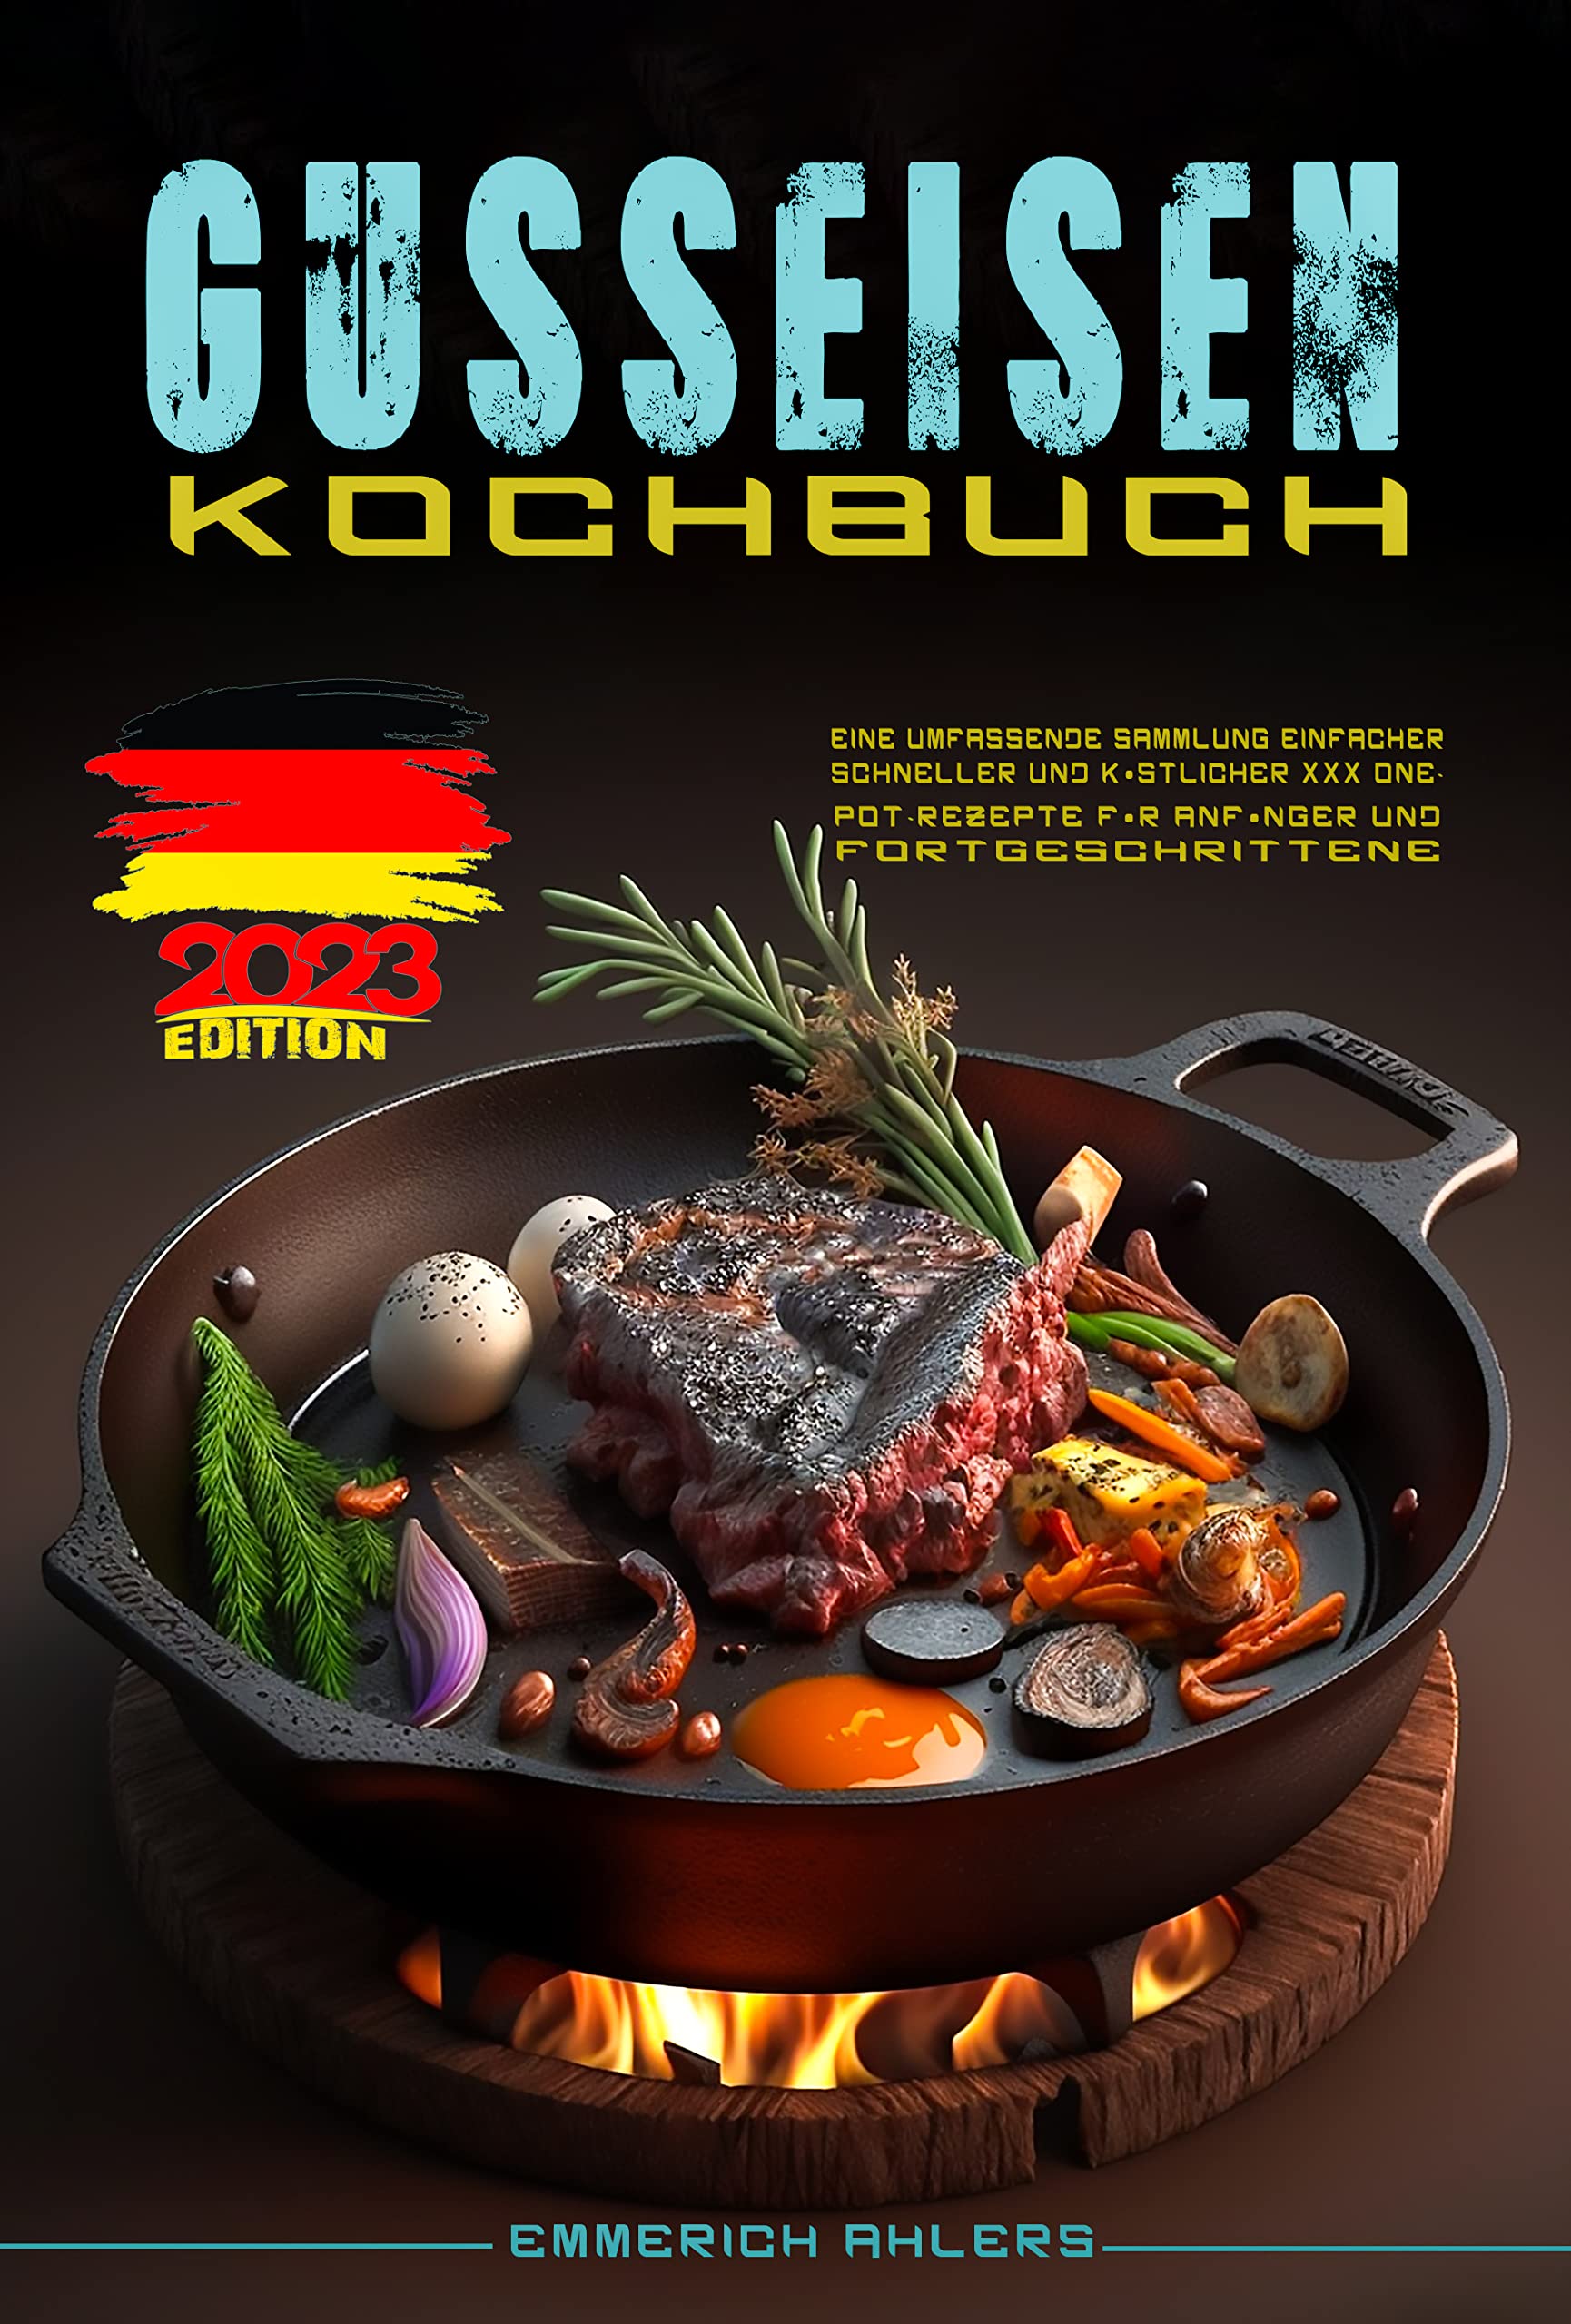 Gusseisen Kochbuch: Eine umfassende Sammlung einfacher, schneller und köstlicher XXX One-Pot-Rezepte für Anfänger und Fortgeschrittene. (German Edition)